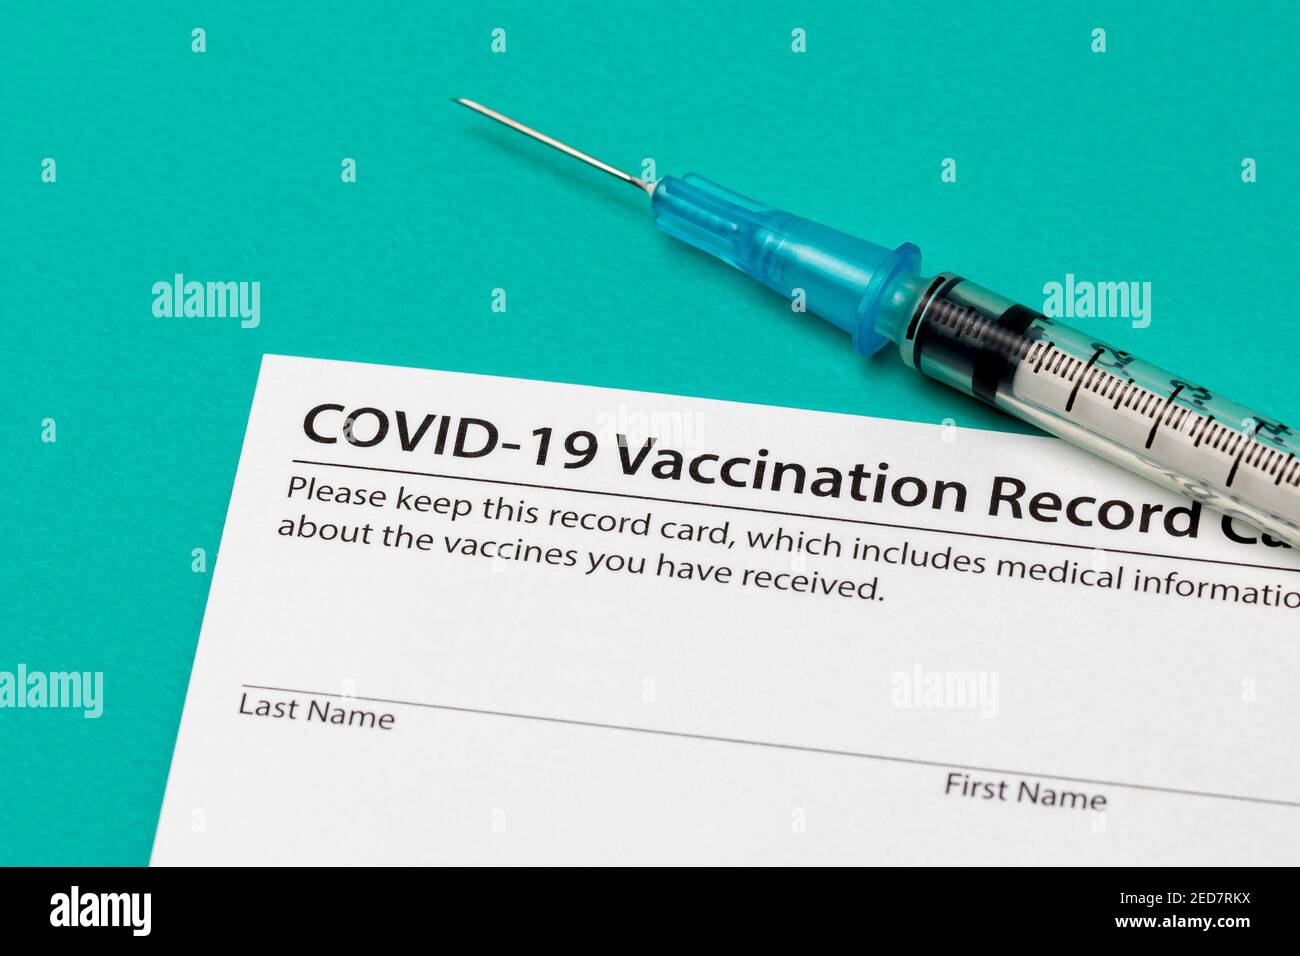 Scheda di registrazione per la vaccinazione con coronavirus Covid-19 con siringa e ago. Concetto di vaccinazione, immunità da mandrie e assistenza sanitaria pandemica. Foto Stock